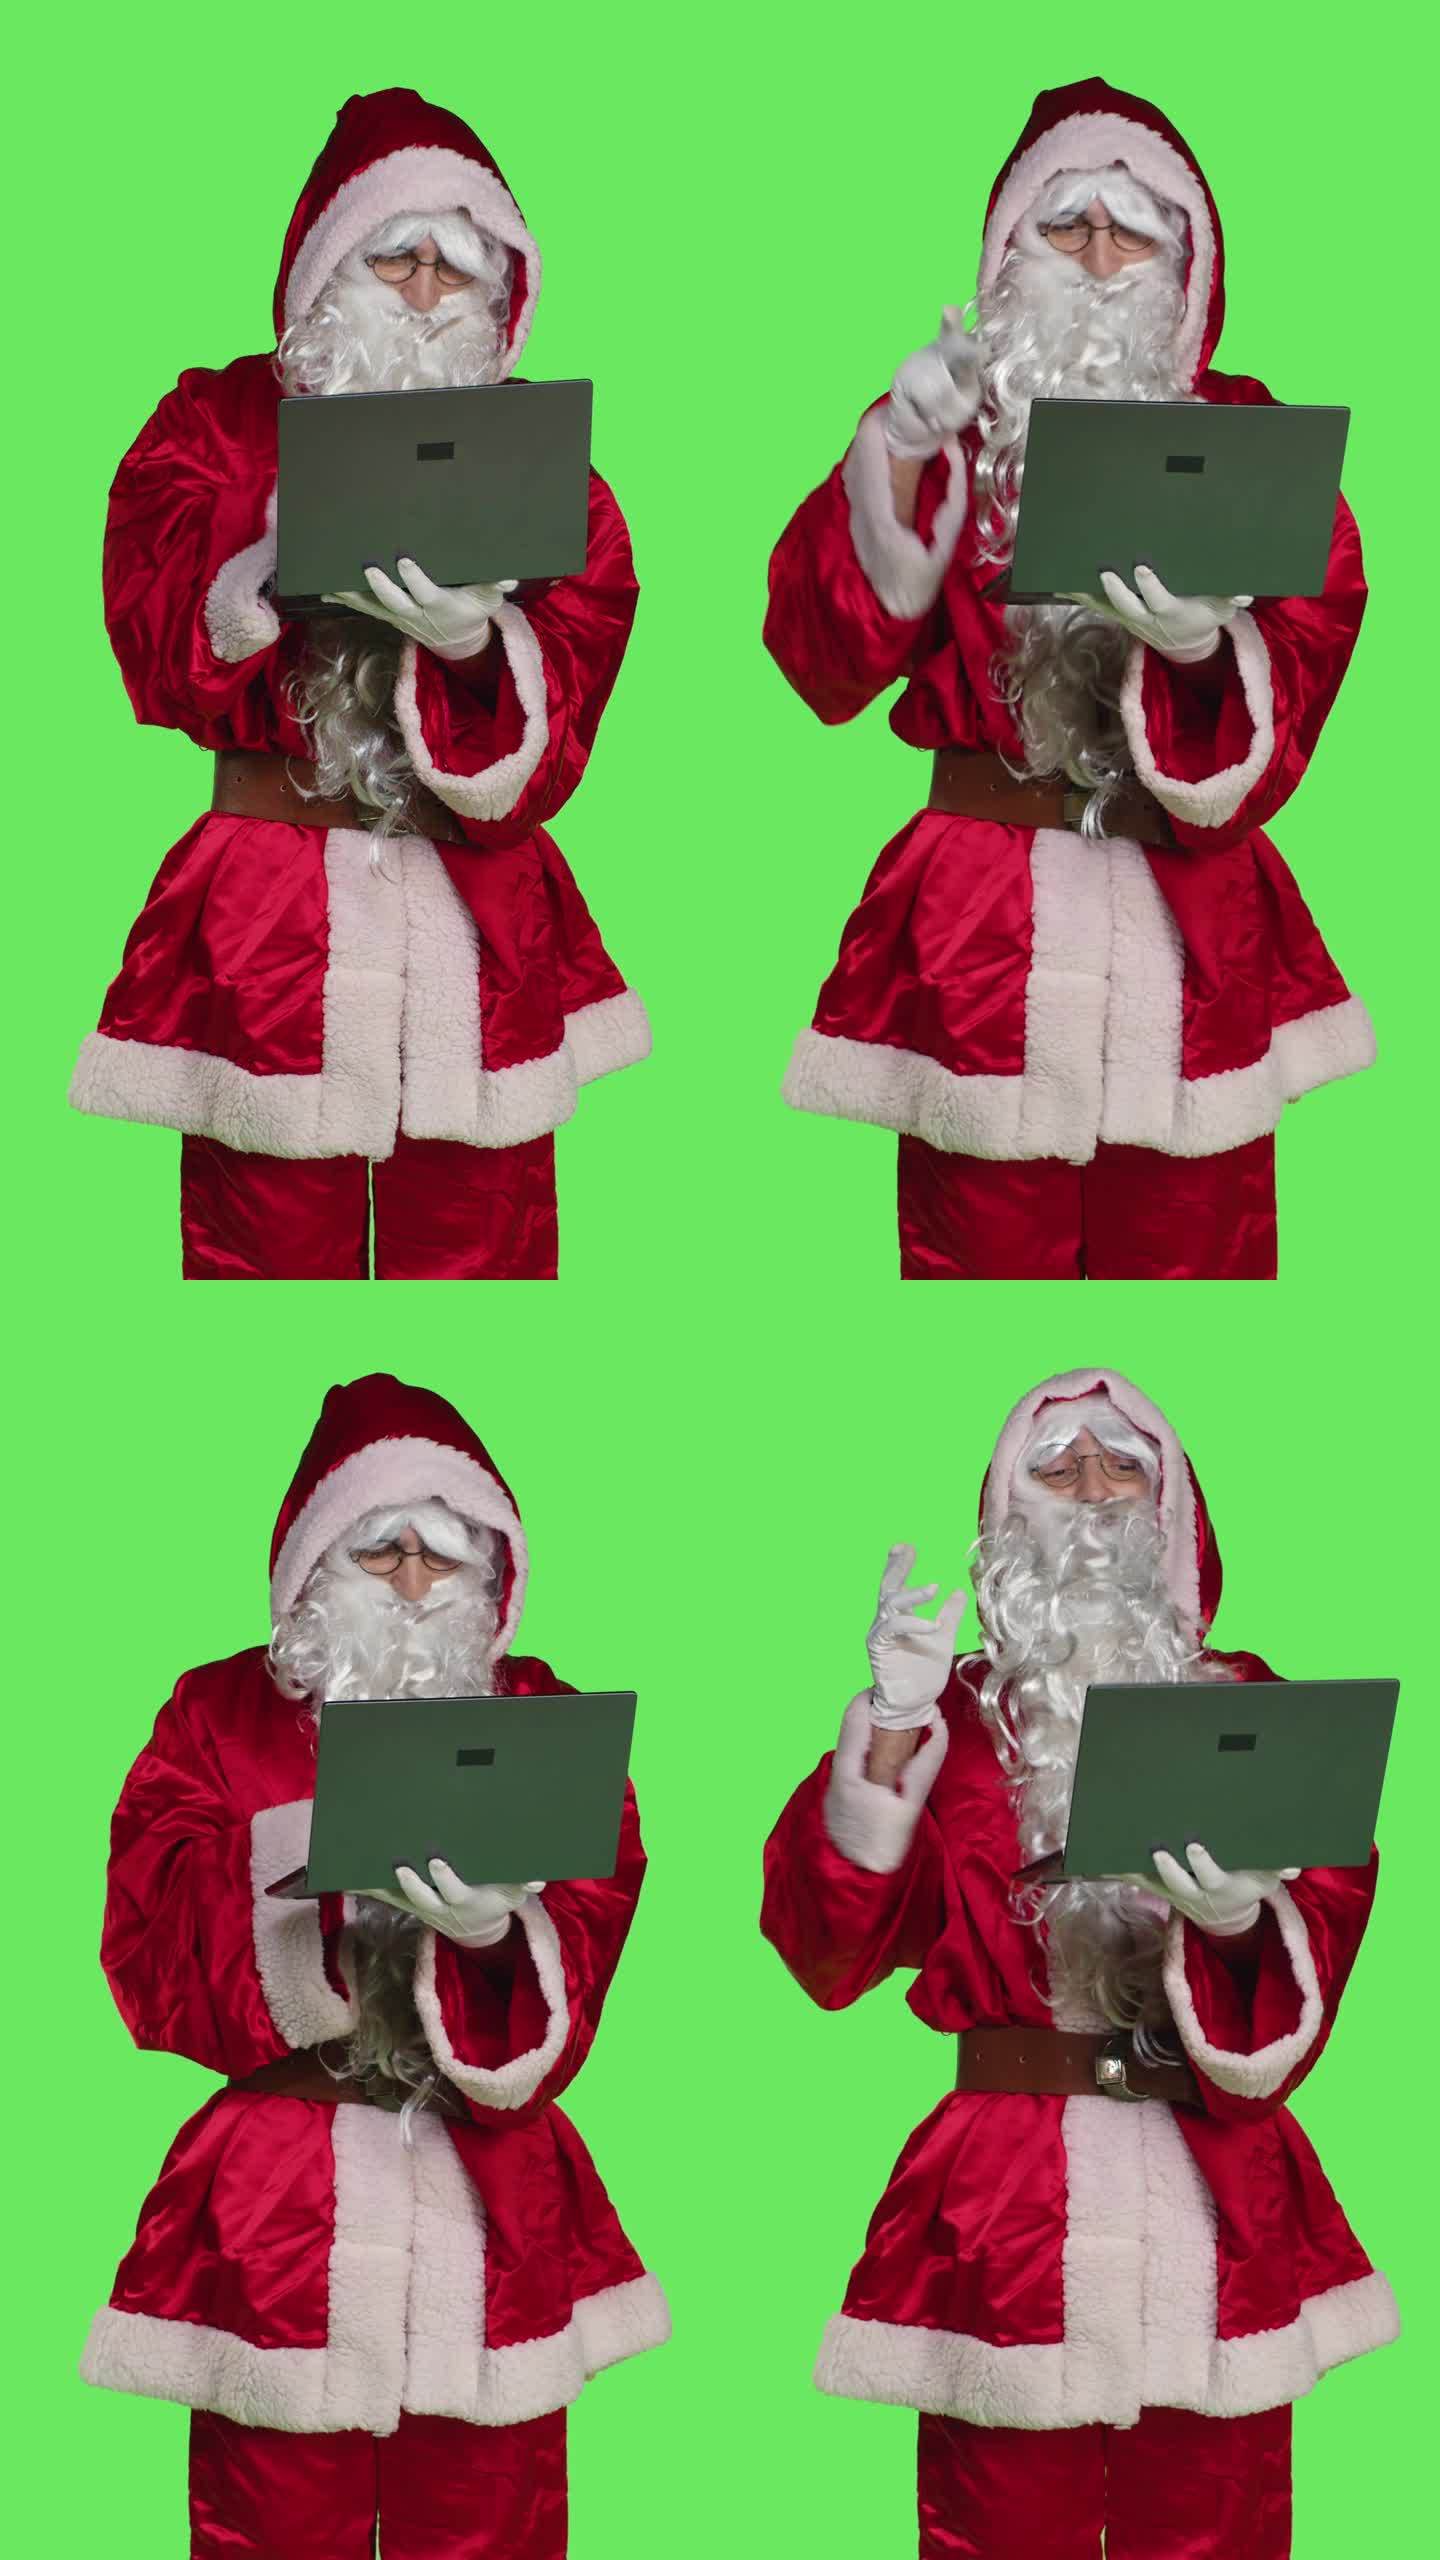 垂直视频前视图酷圣诞老人性格与笔记本电脑